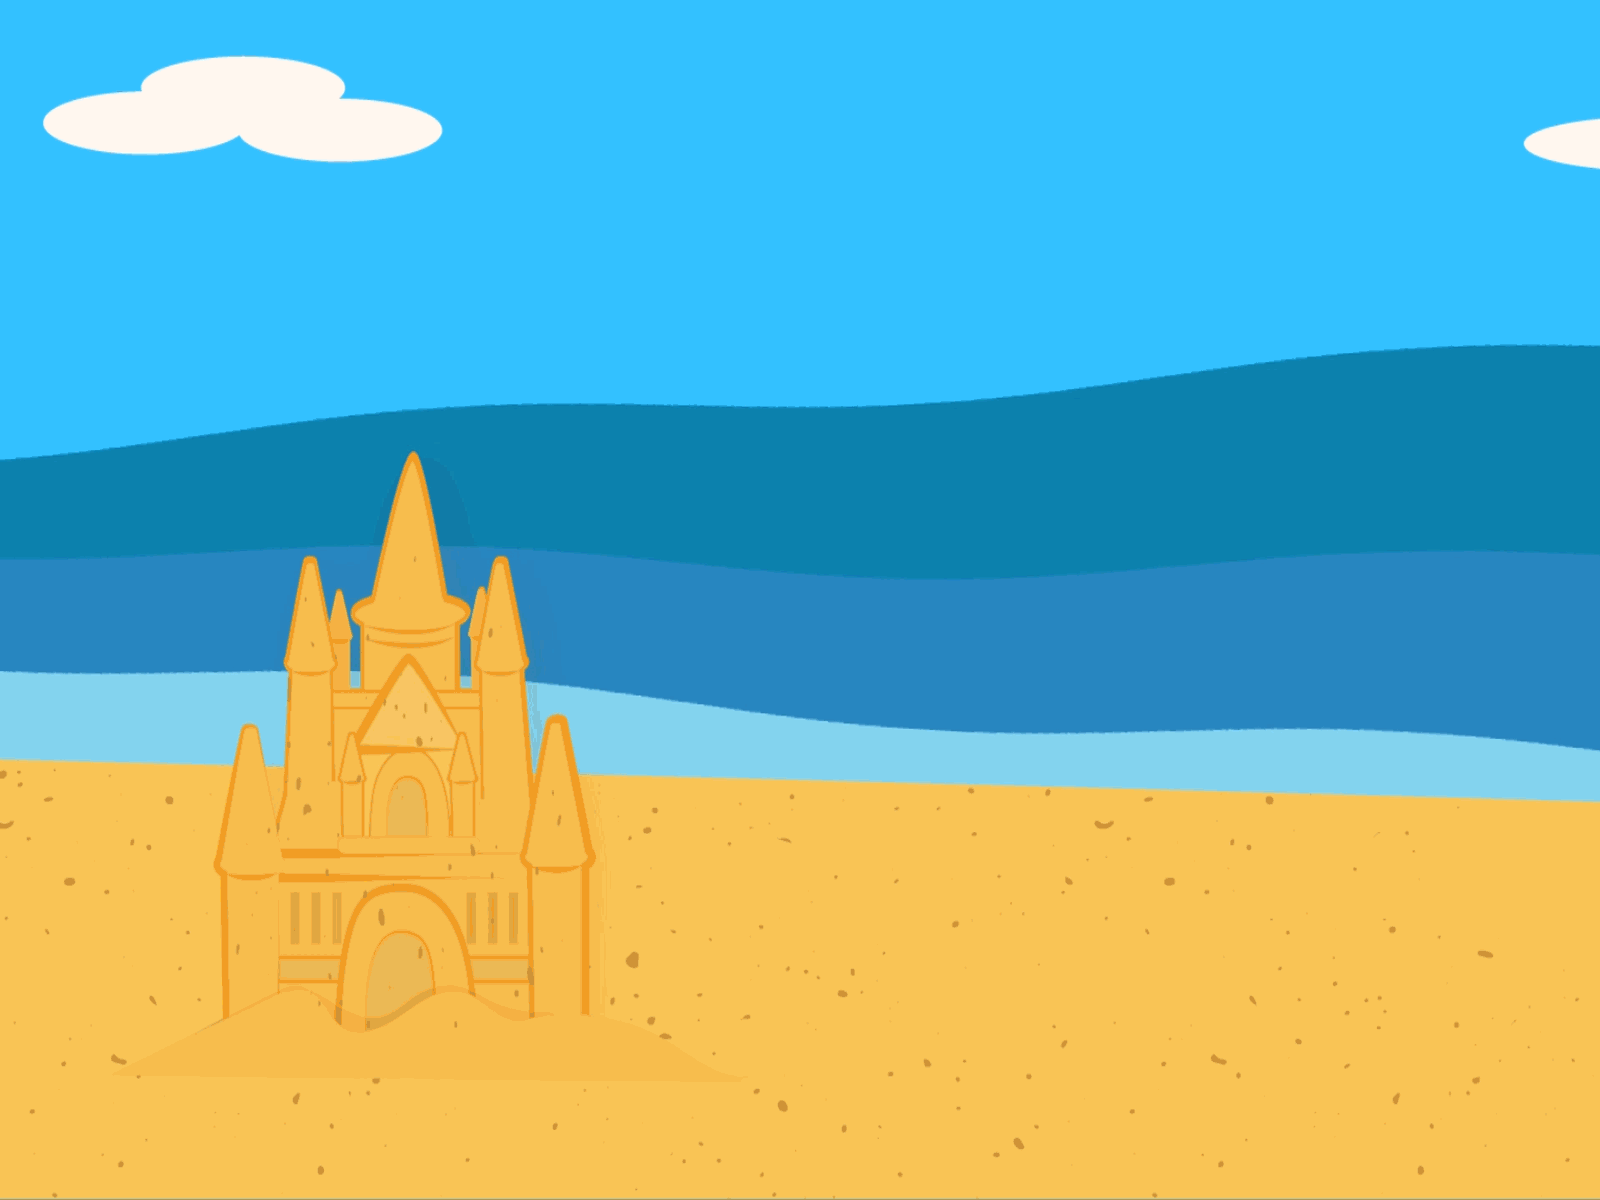 sand castle animation animation 2d gif illustration illustrator illustrator design ilustracion motion sand sandcastle vector